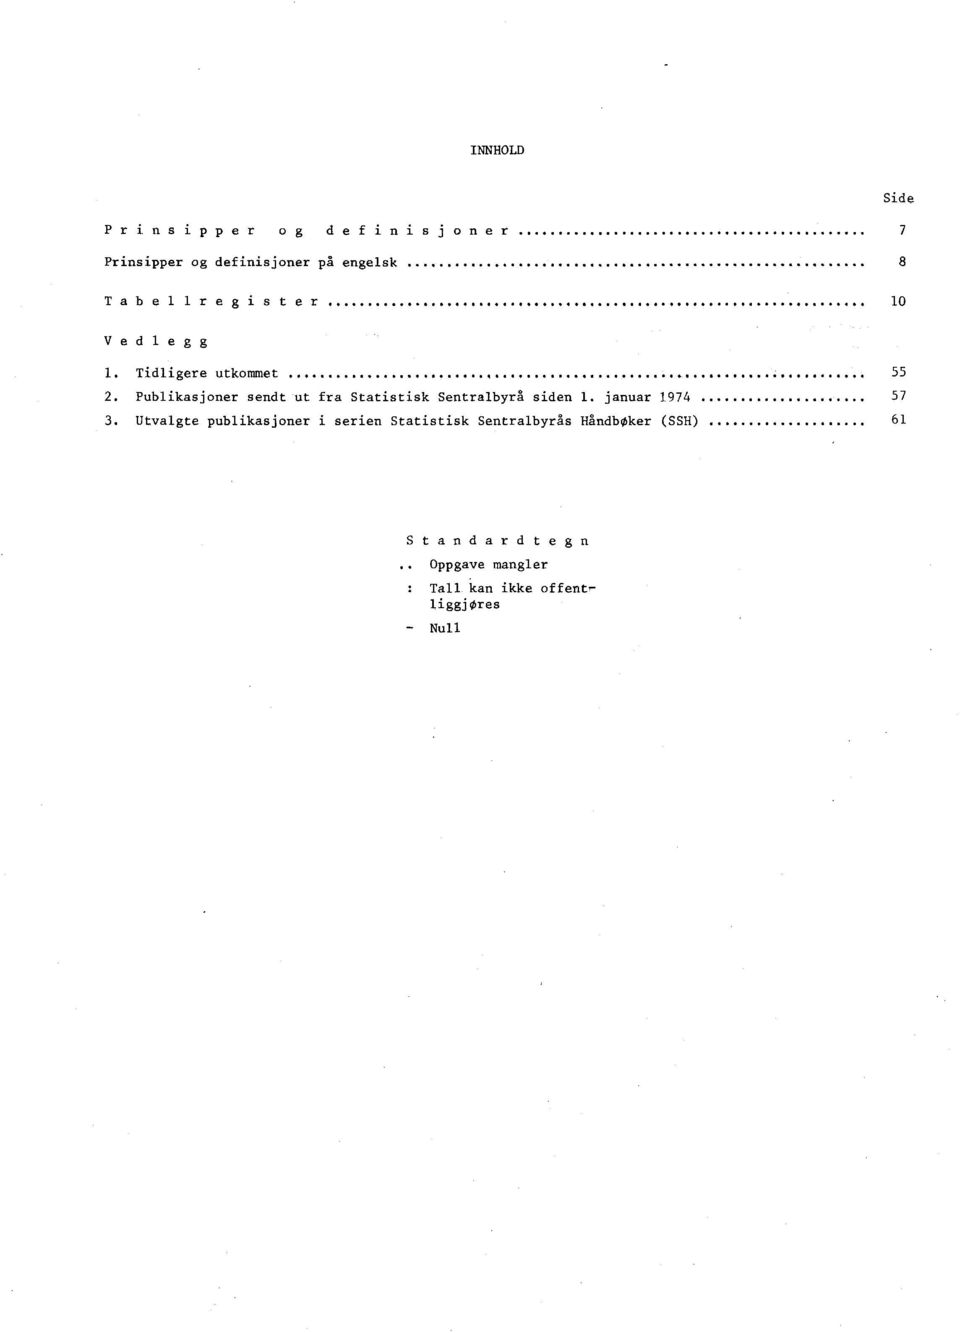 Publikasjoner sendt ut fra Statistisk Sentralbyrå siden. januar 974 57 3.